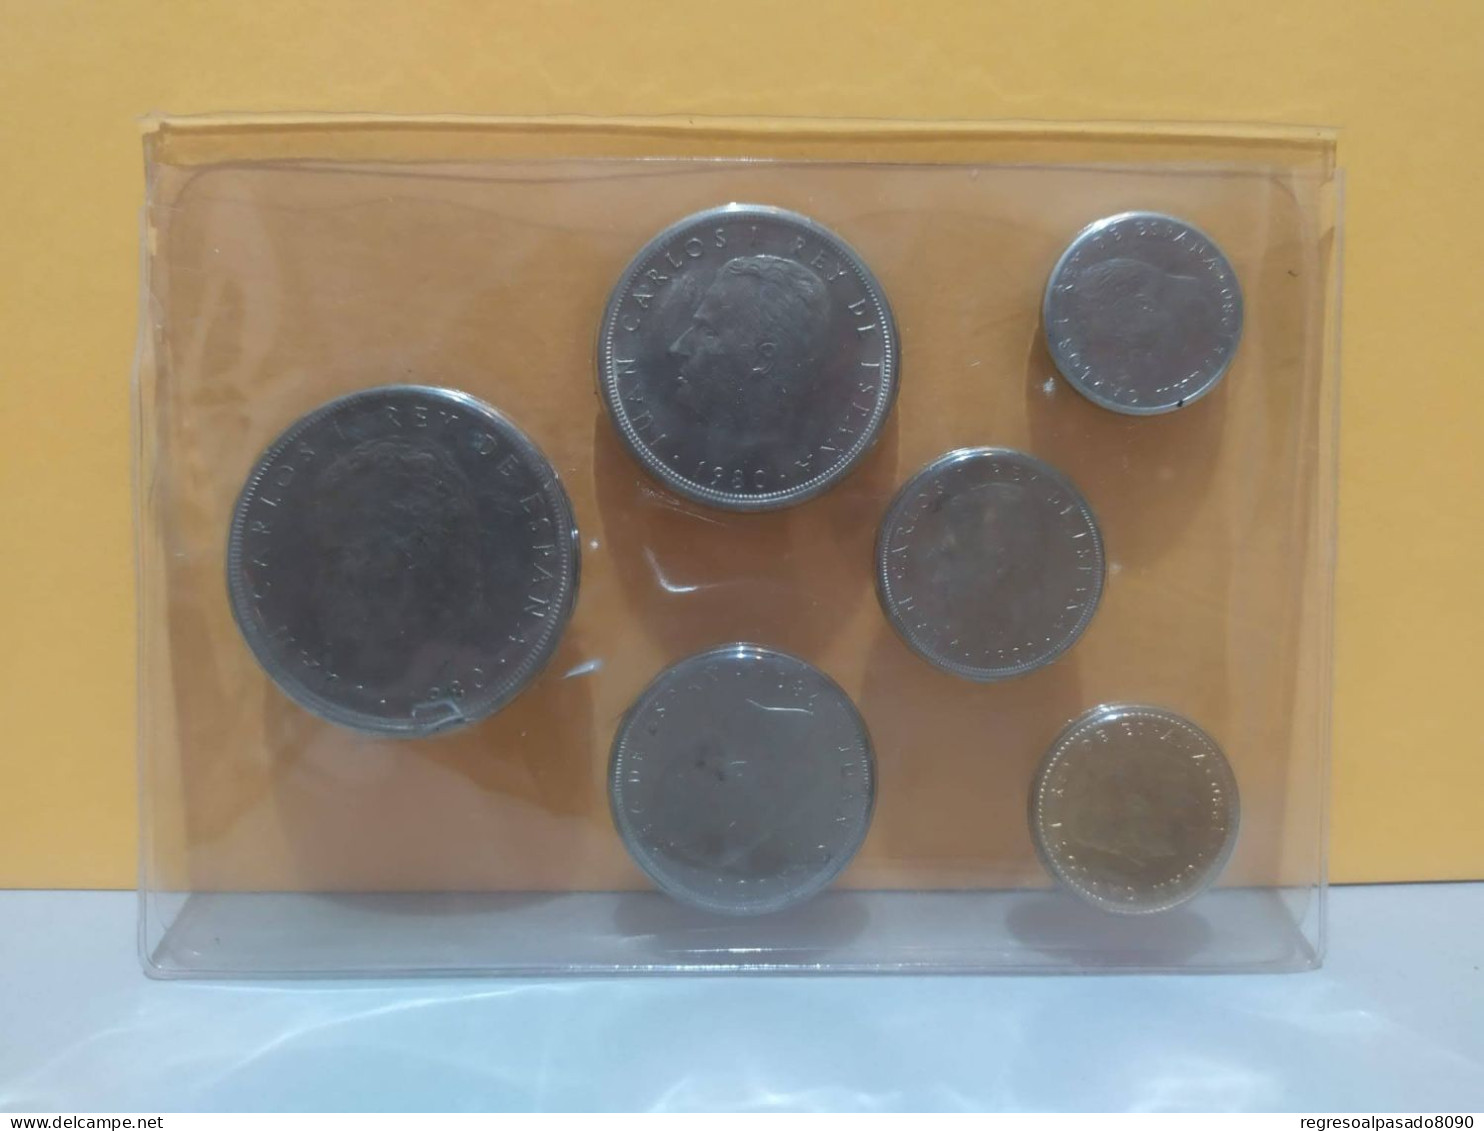 monedas de pesetas serie numismática mundial España 82 presentado en cartera